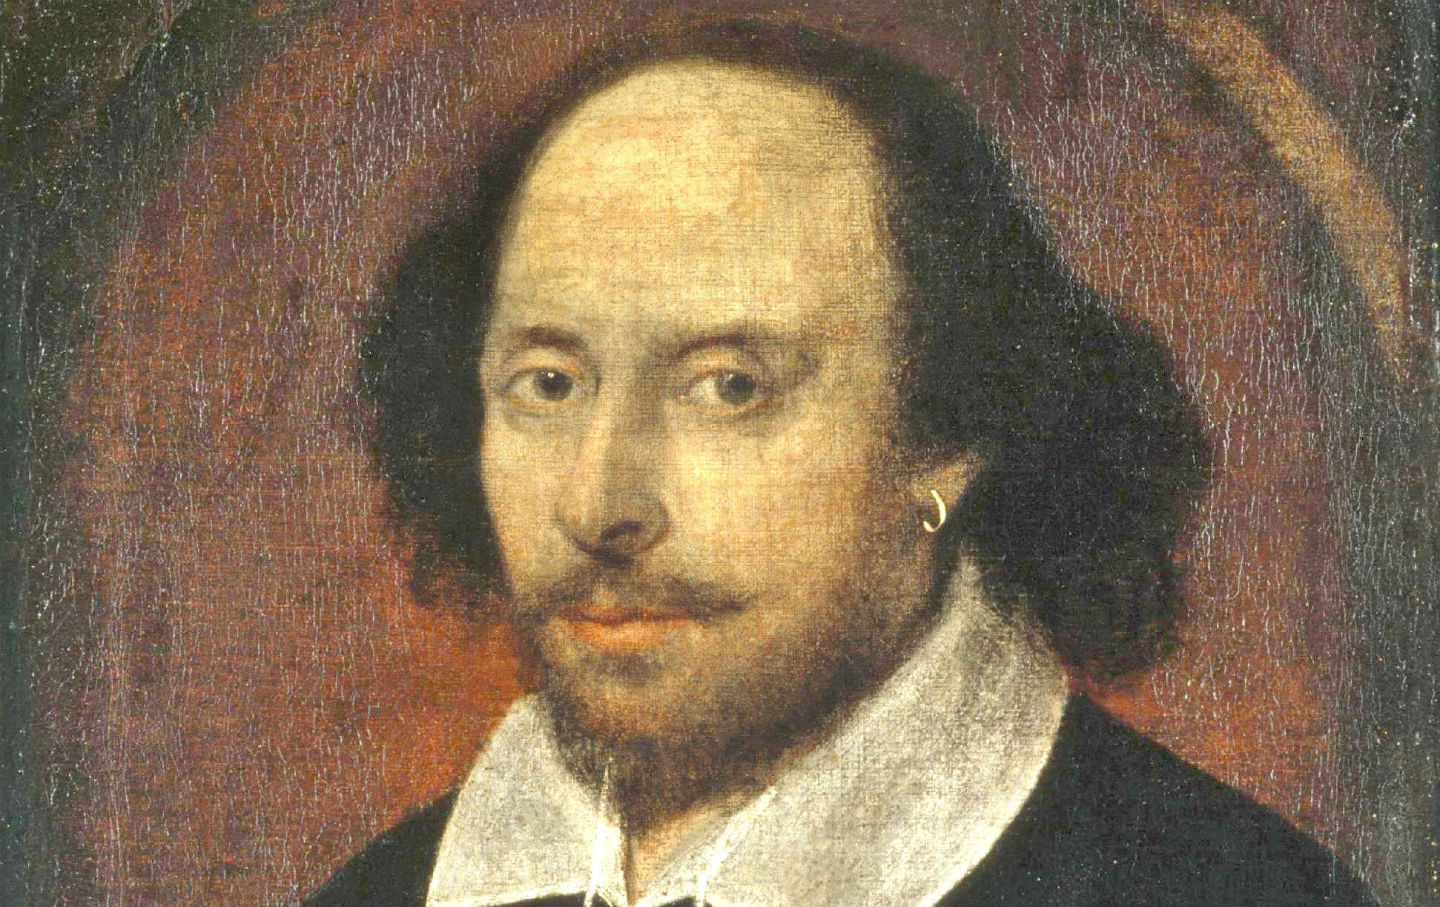 April 23, 1564: William Shakespeare Is Born